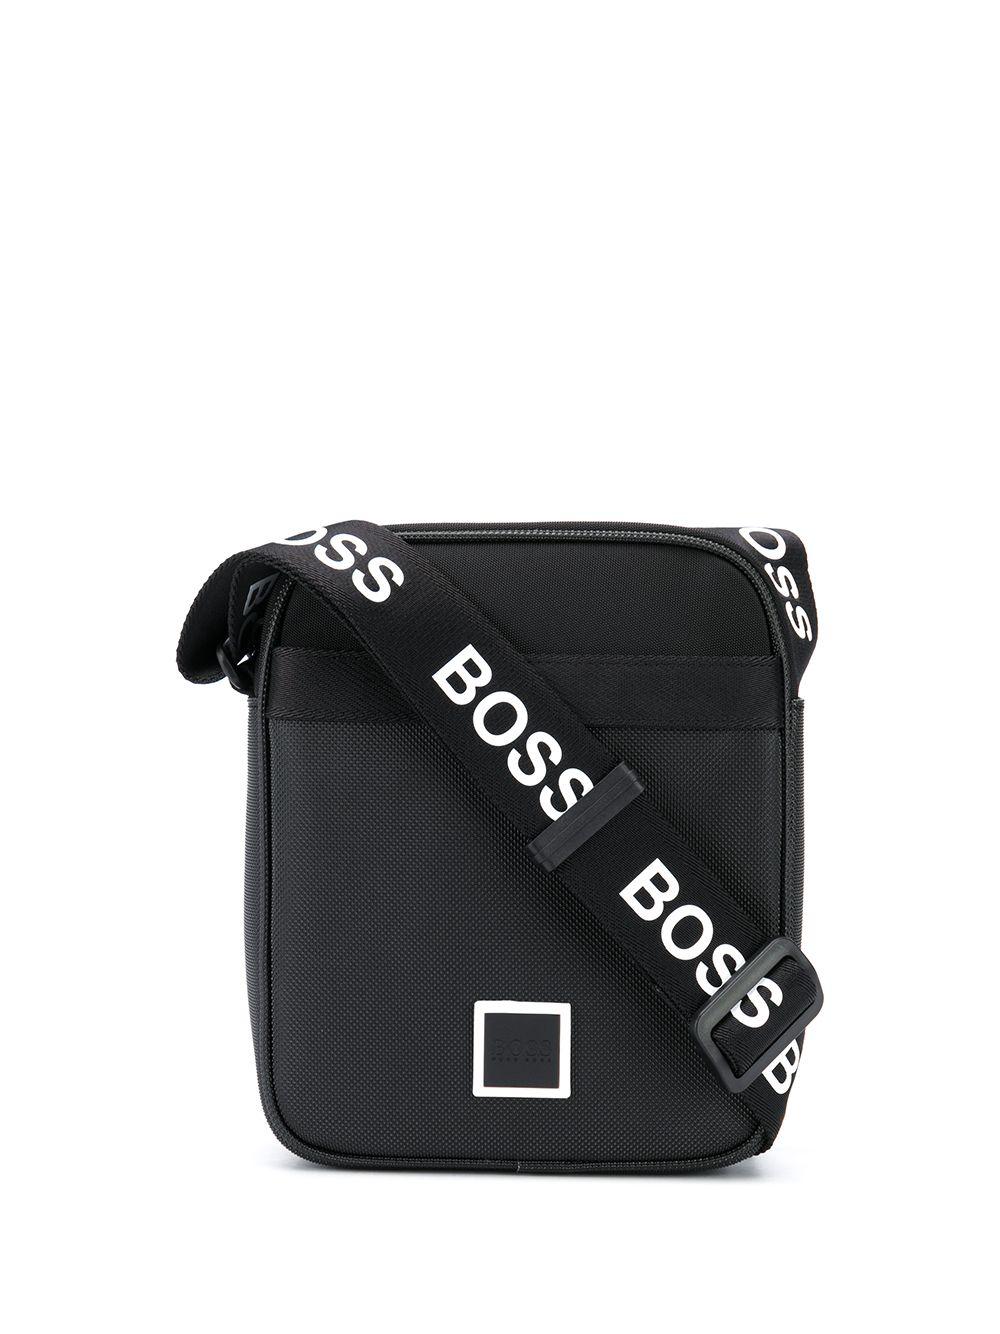 hugo boss bag black